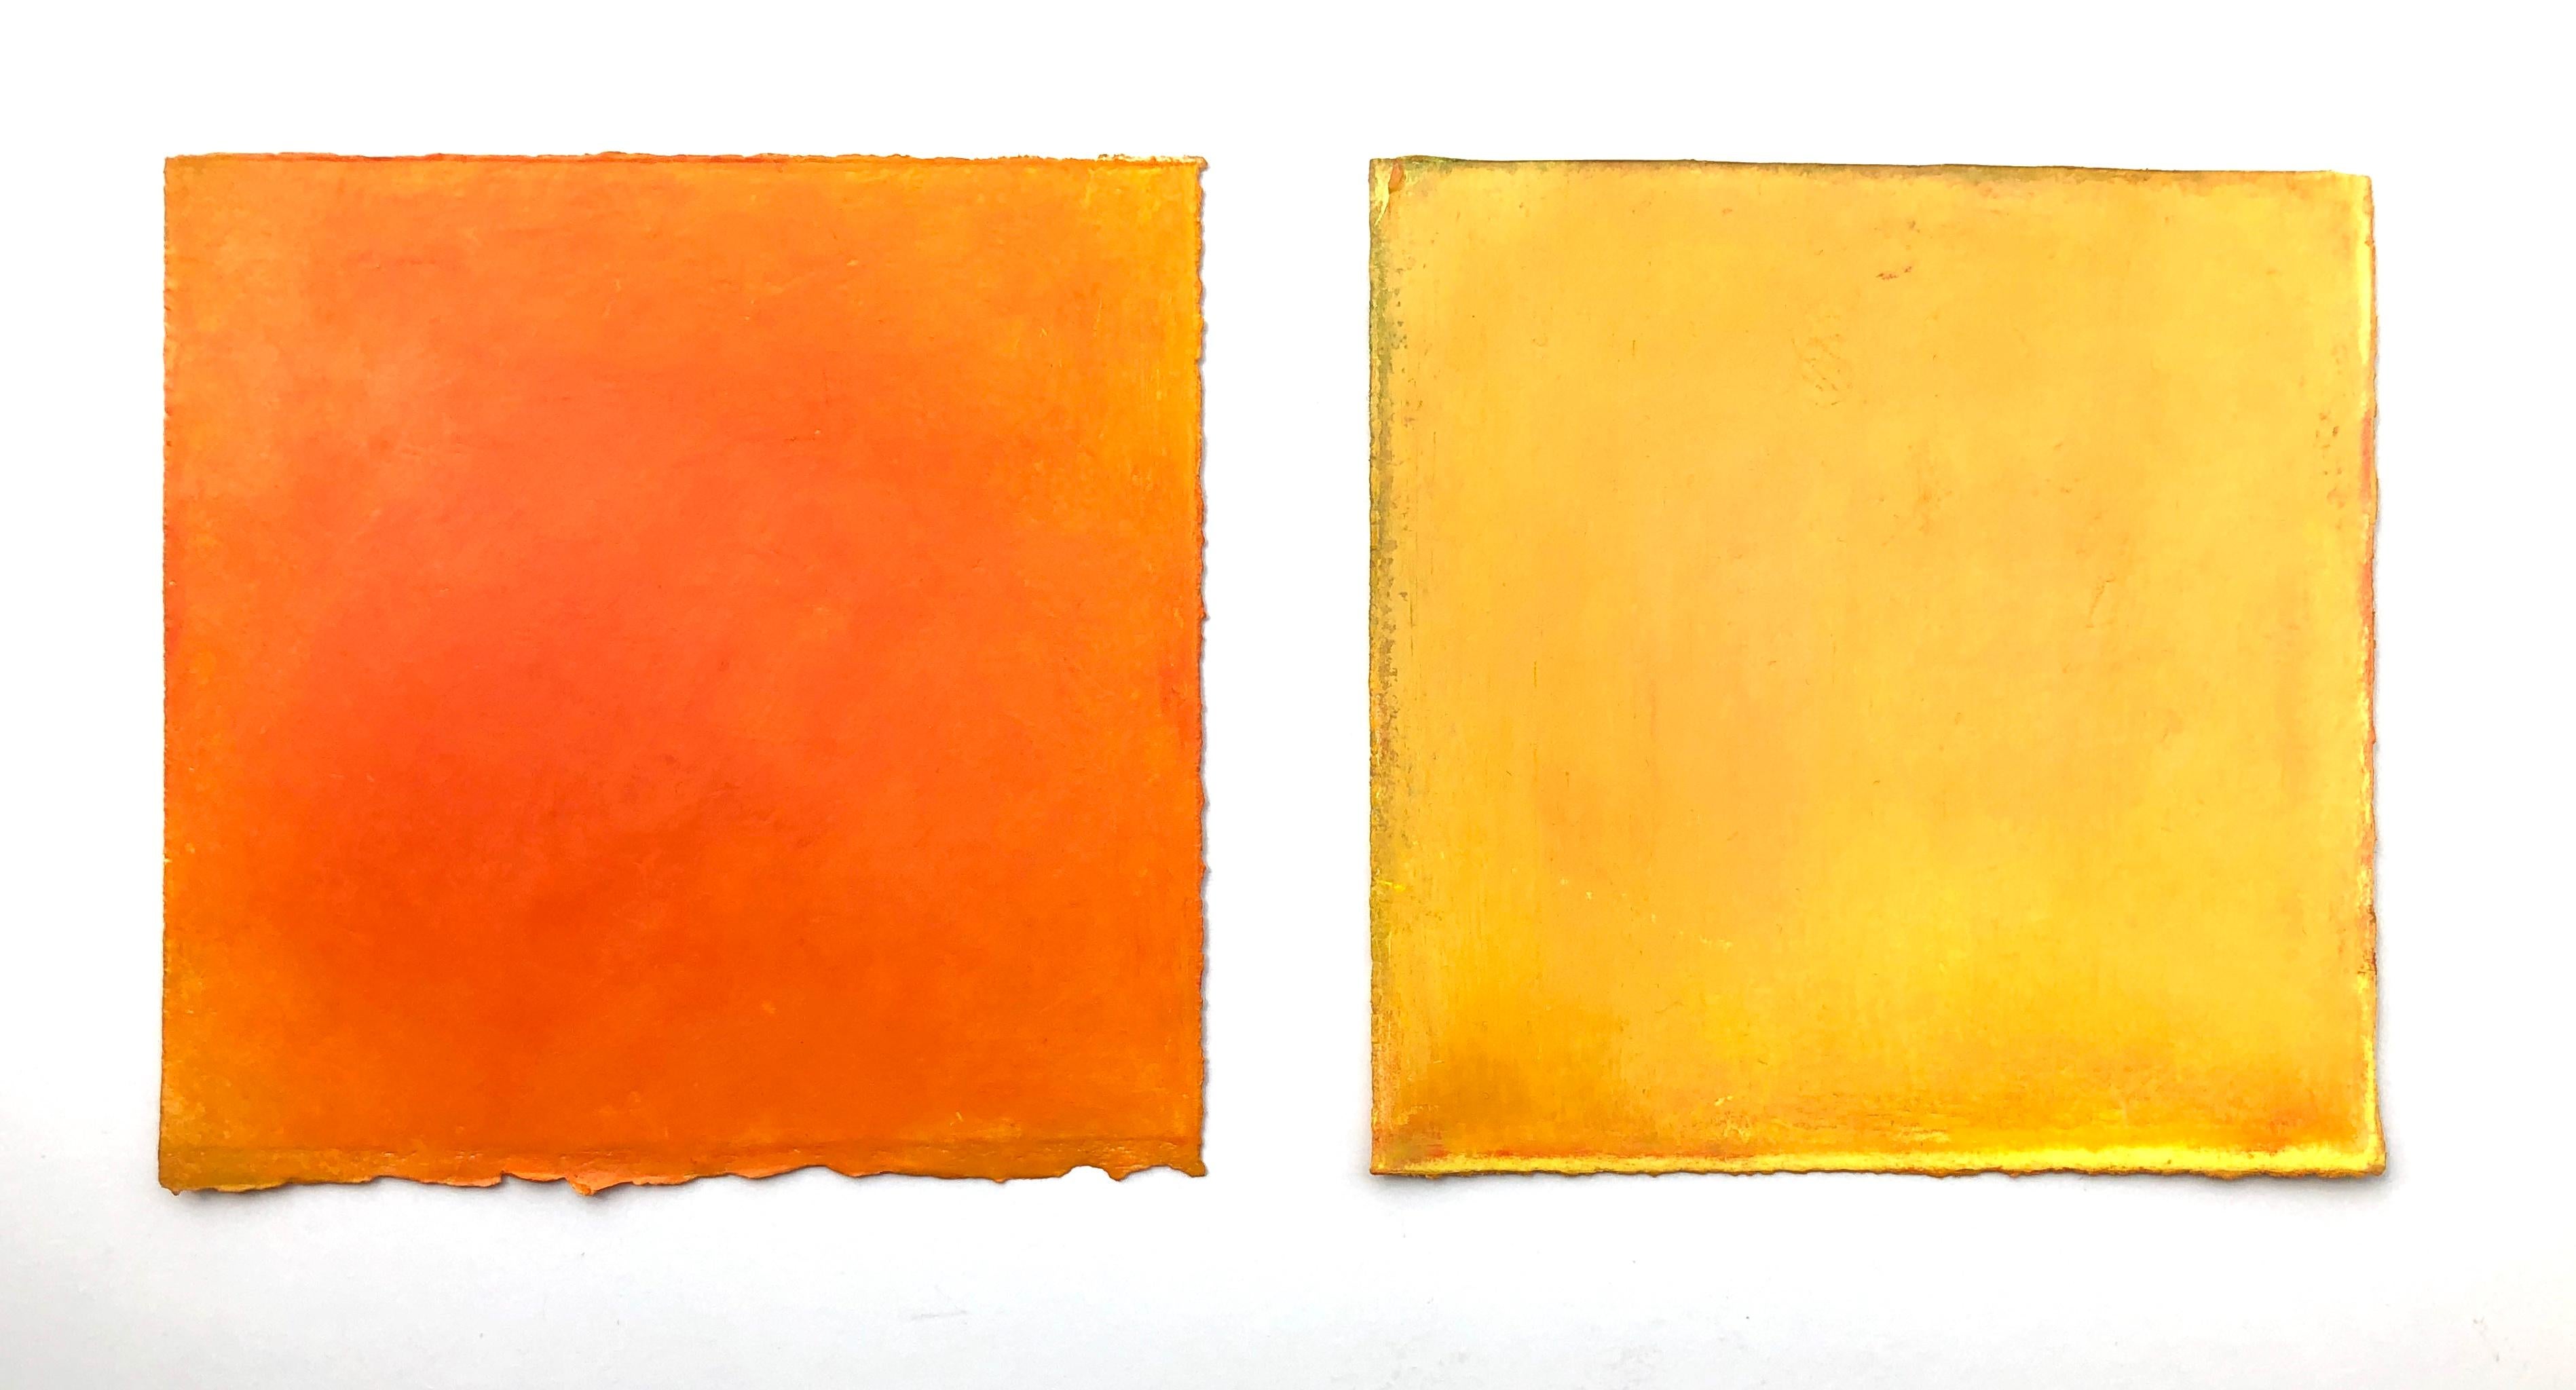 Abstract Drawing Daisy Craddock - Première flamme, nature morte abstraite de fruits pastel orange et jaune, 2020